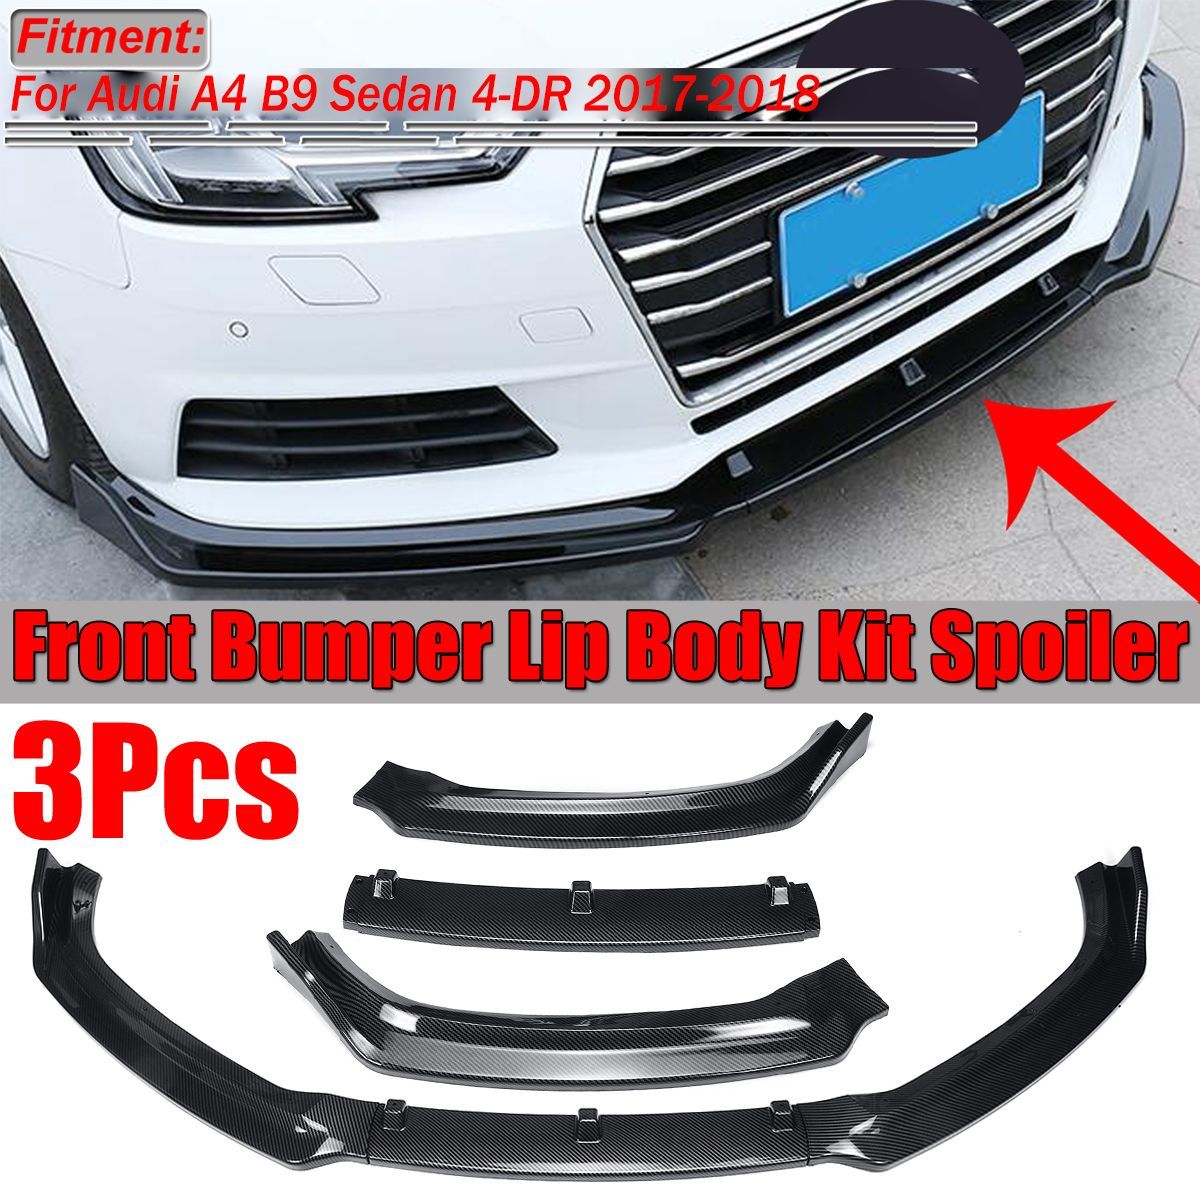 Carbon-Fiber-Look-Front-Bumper-Lip-Spoiler-Cover-Trim-3PCS-For-Audi-A4-B9-Sedan-2017-2018-1664278